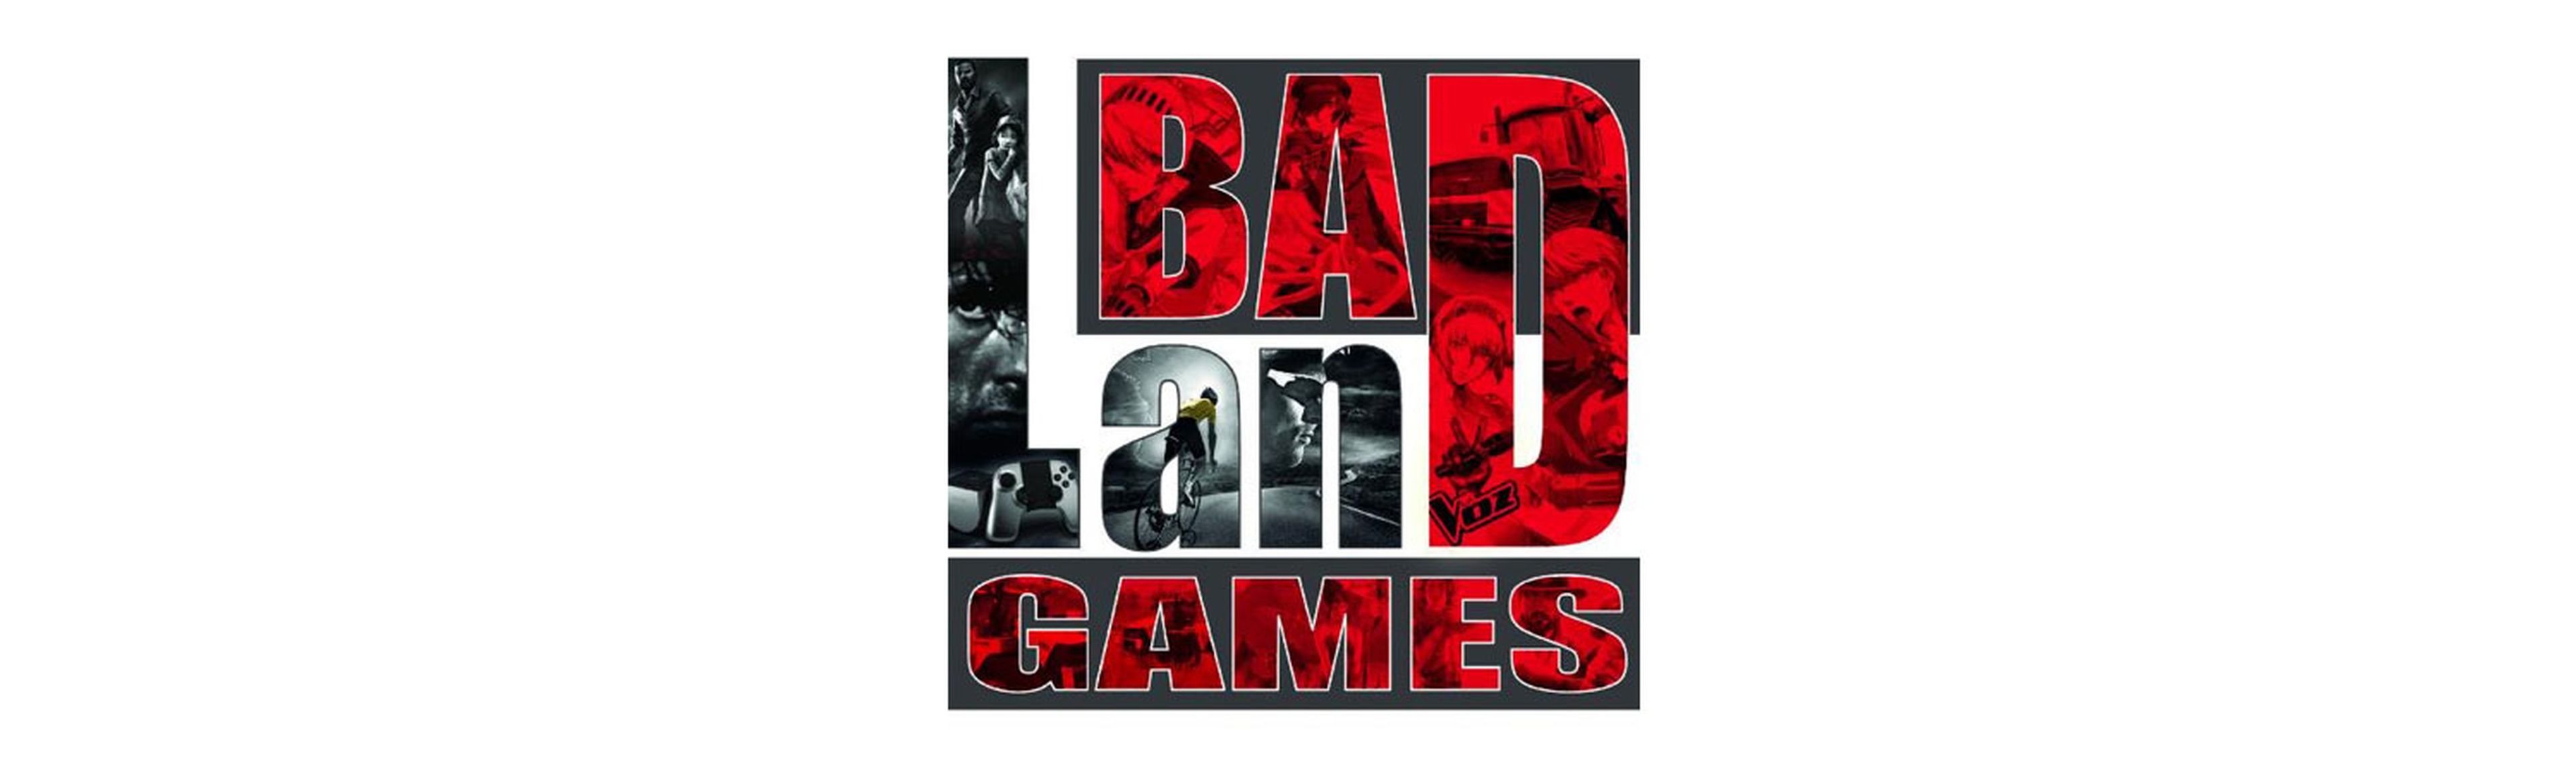 BadLand Games ha mostrado tanto los títulos más comerciales como los proyectos indie españoles